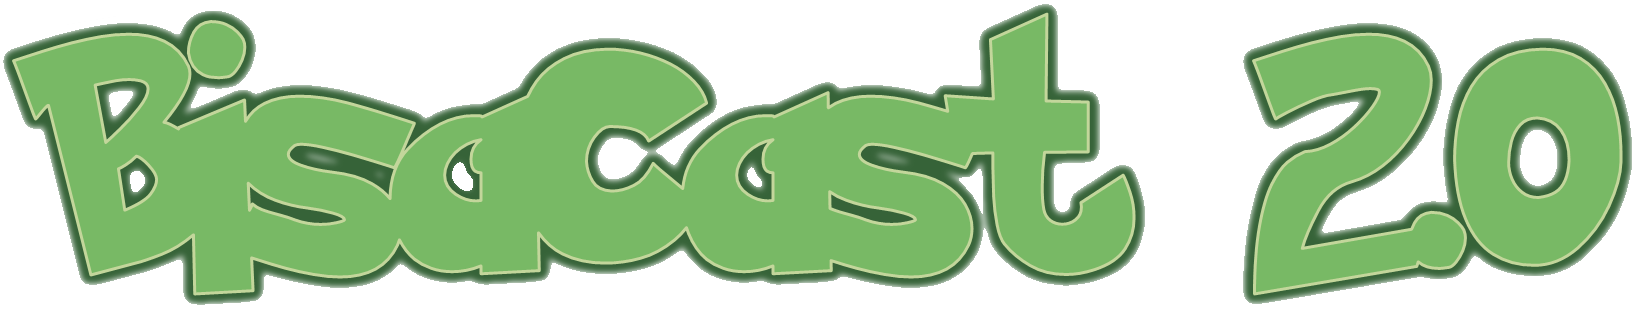 BisaCast_Logo2